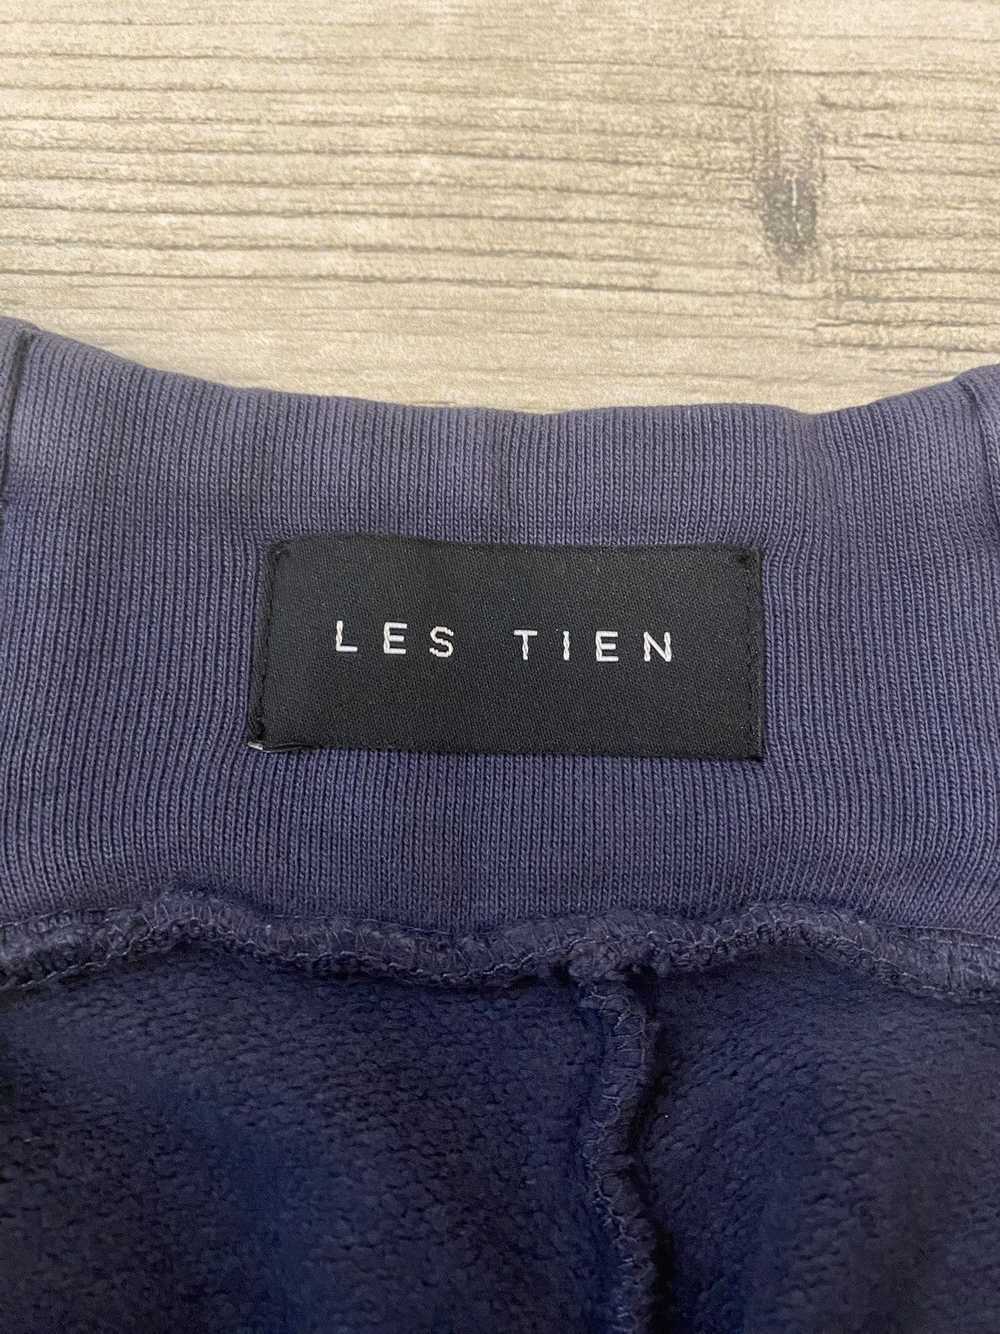 Les Tien Les Tien Yacht shorts - image 4